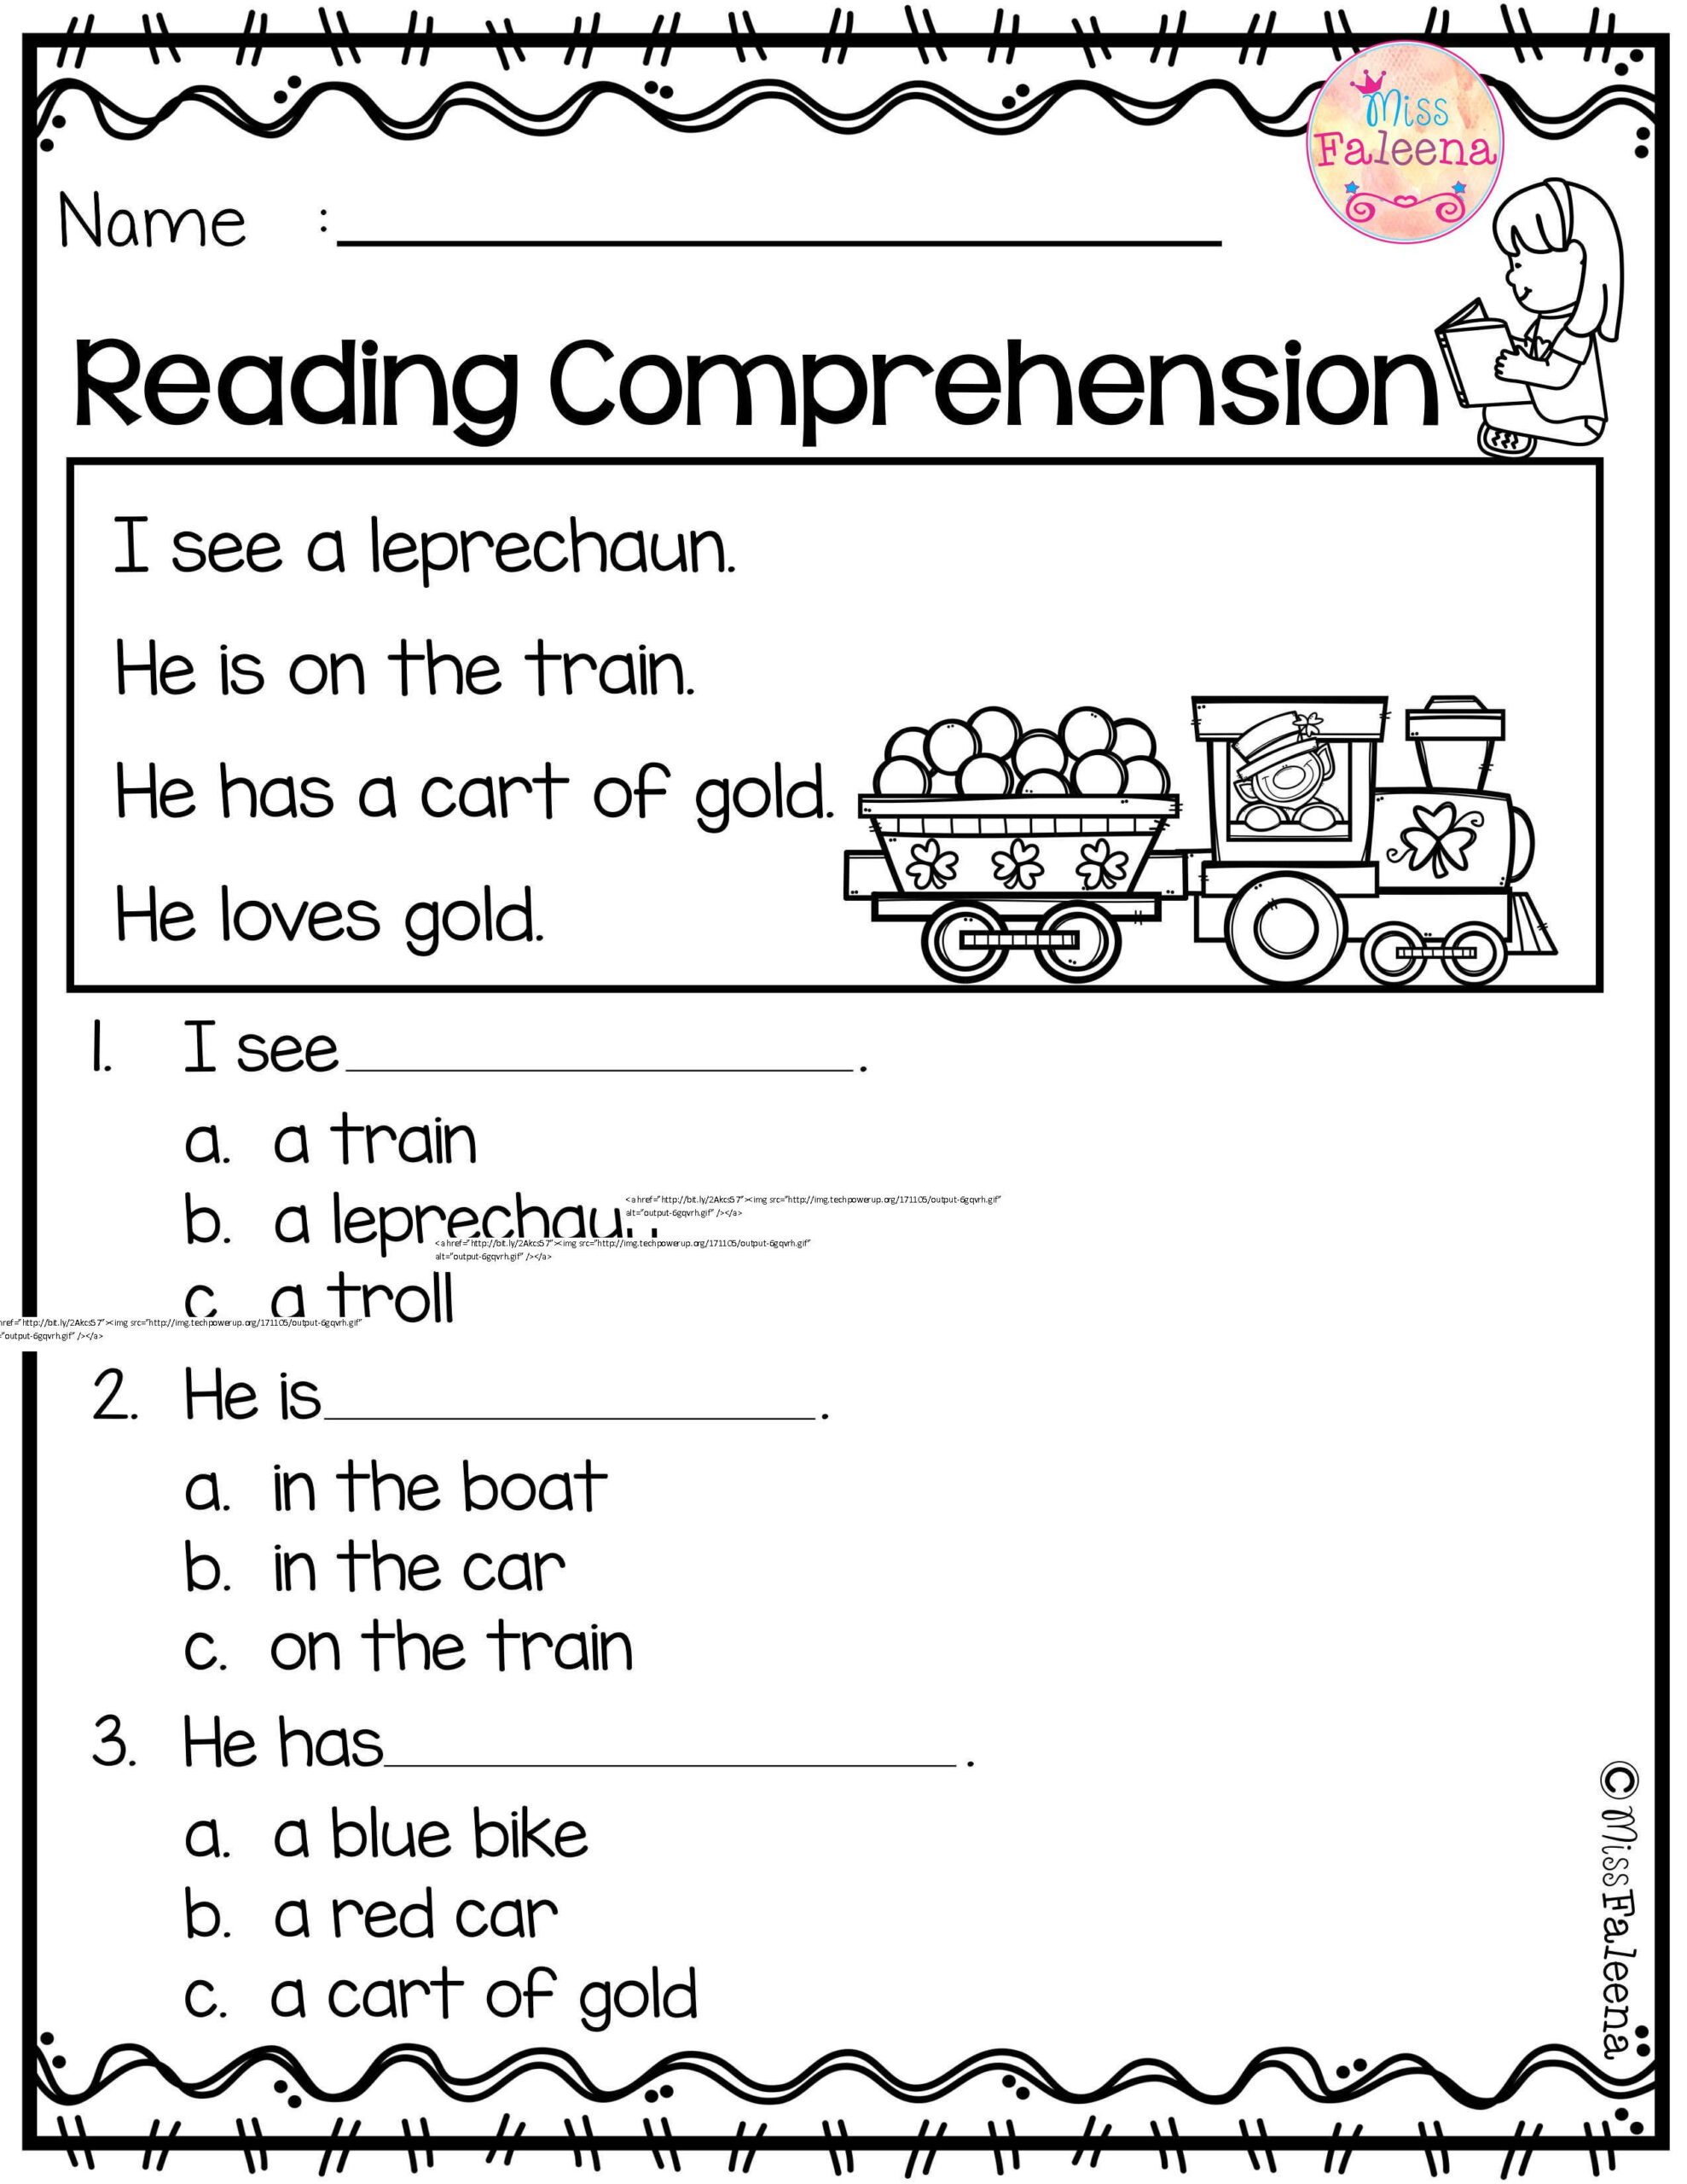 kindergarten-reading-worksheets-printable-reading-comprehension